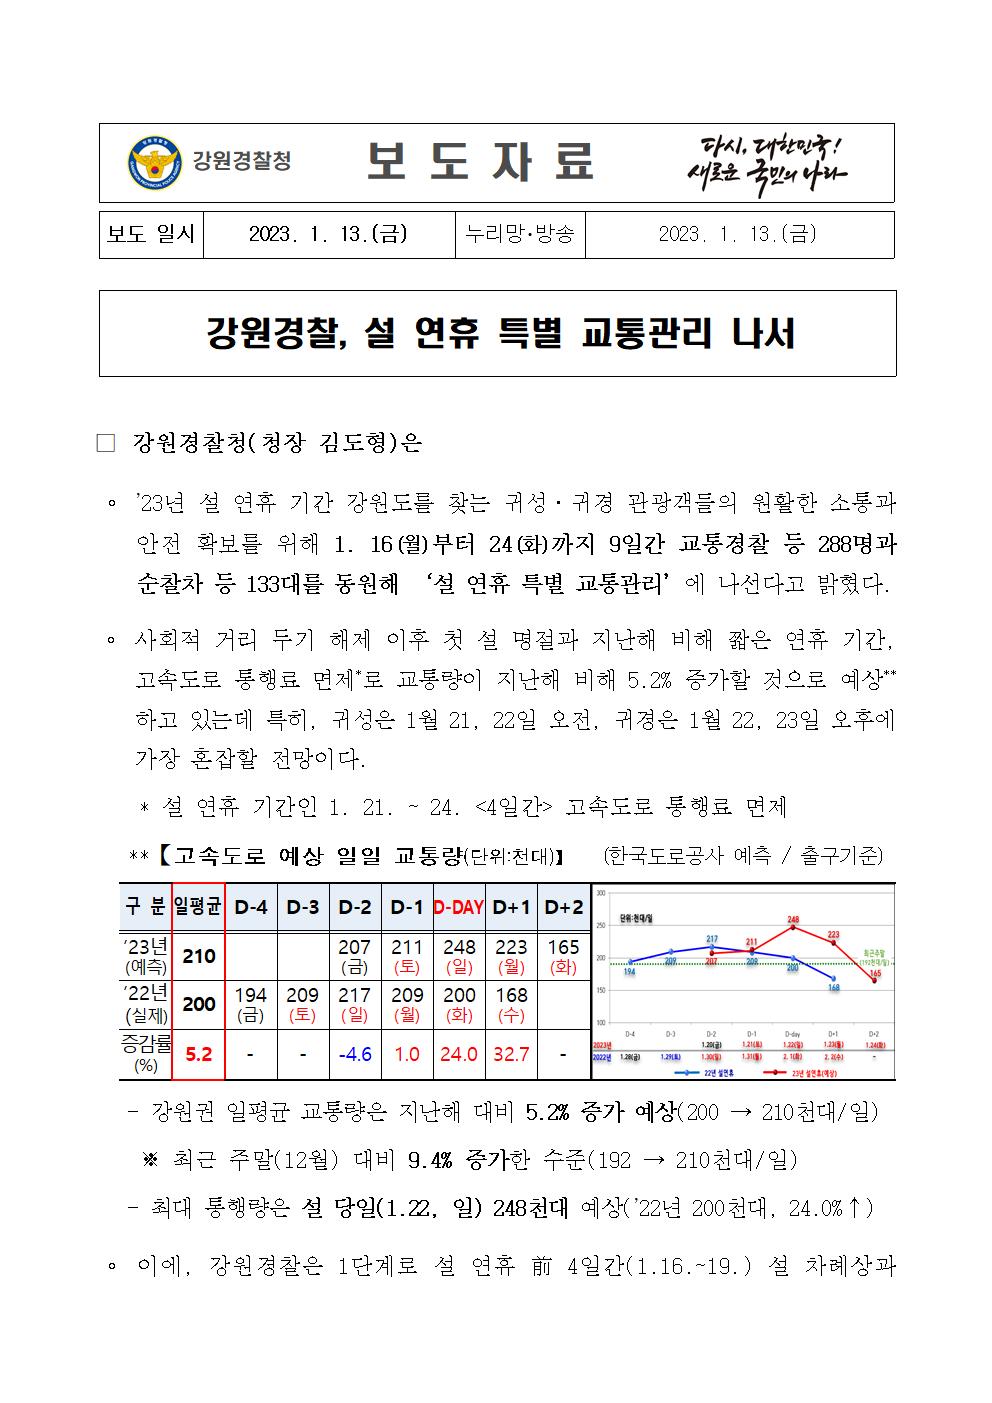 강원경찰, 설 연휴 특별 교통관리 나서 -강원경찰, 설 연휴 특별 교통관리 나서 001